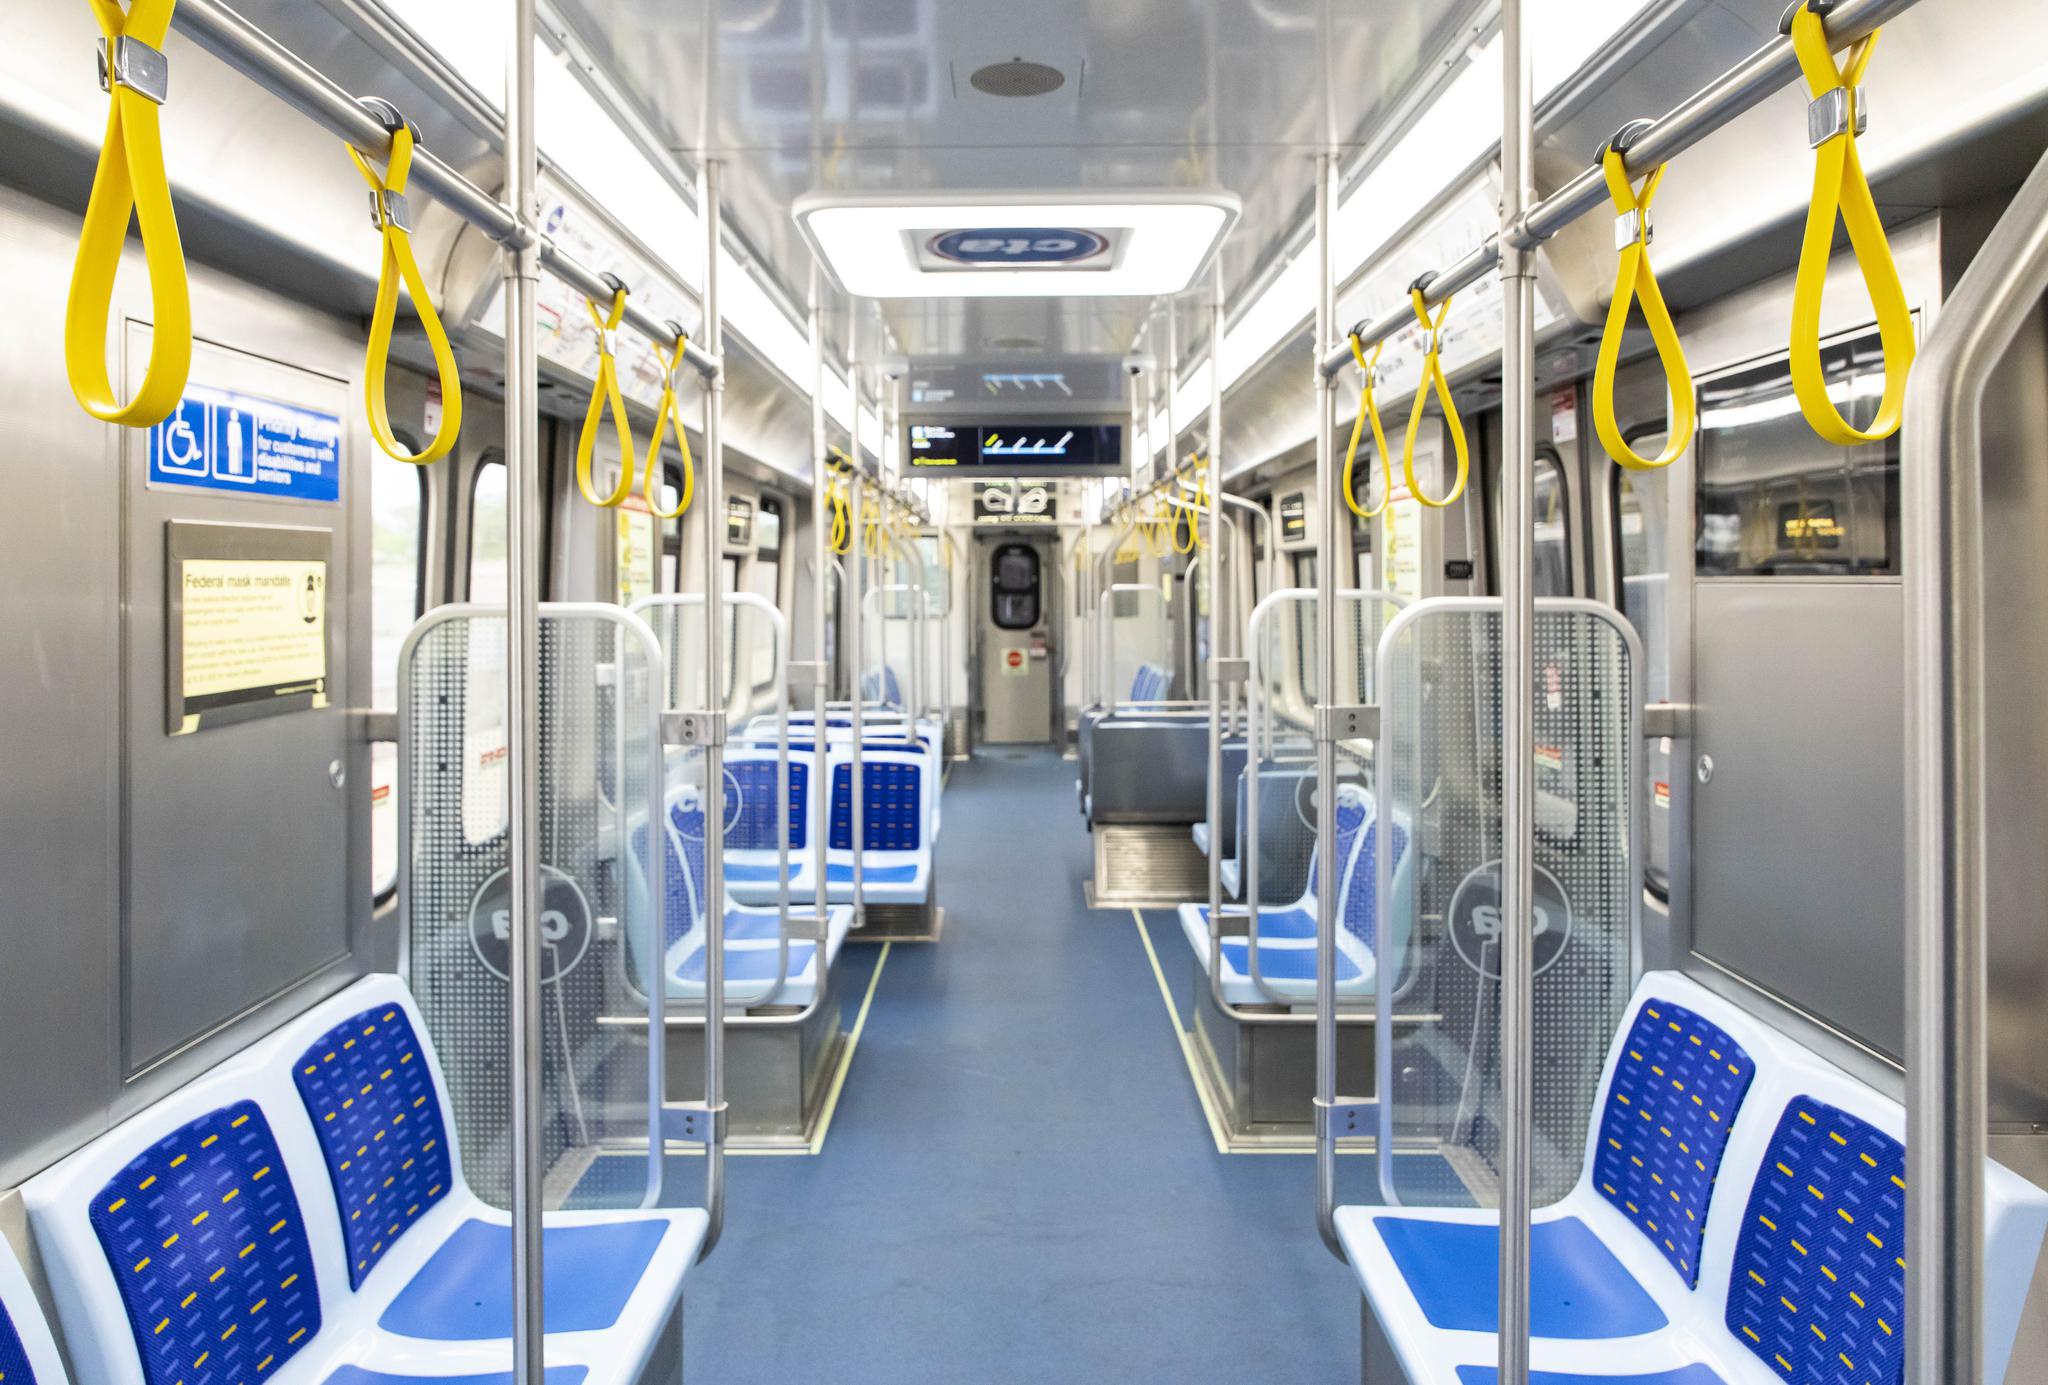 Interior of 7000-series metro train